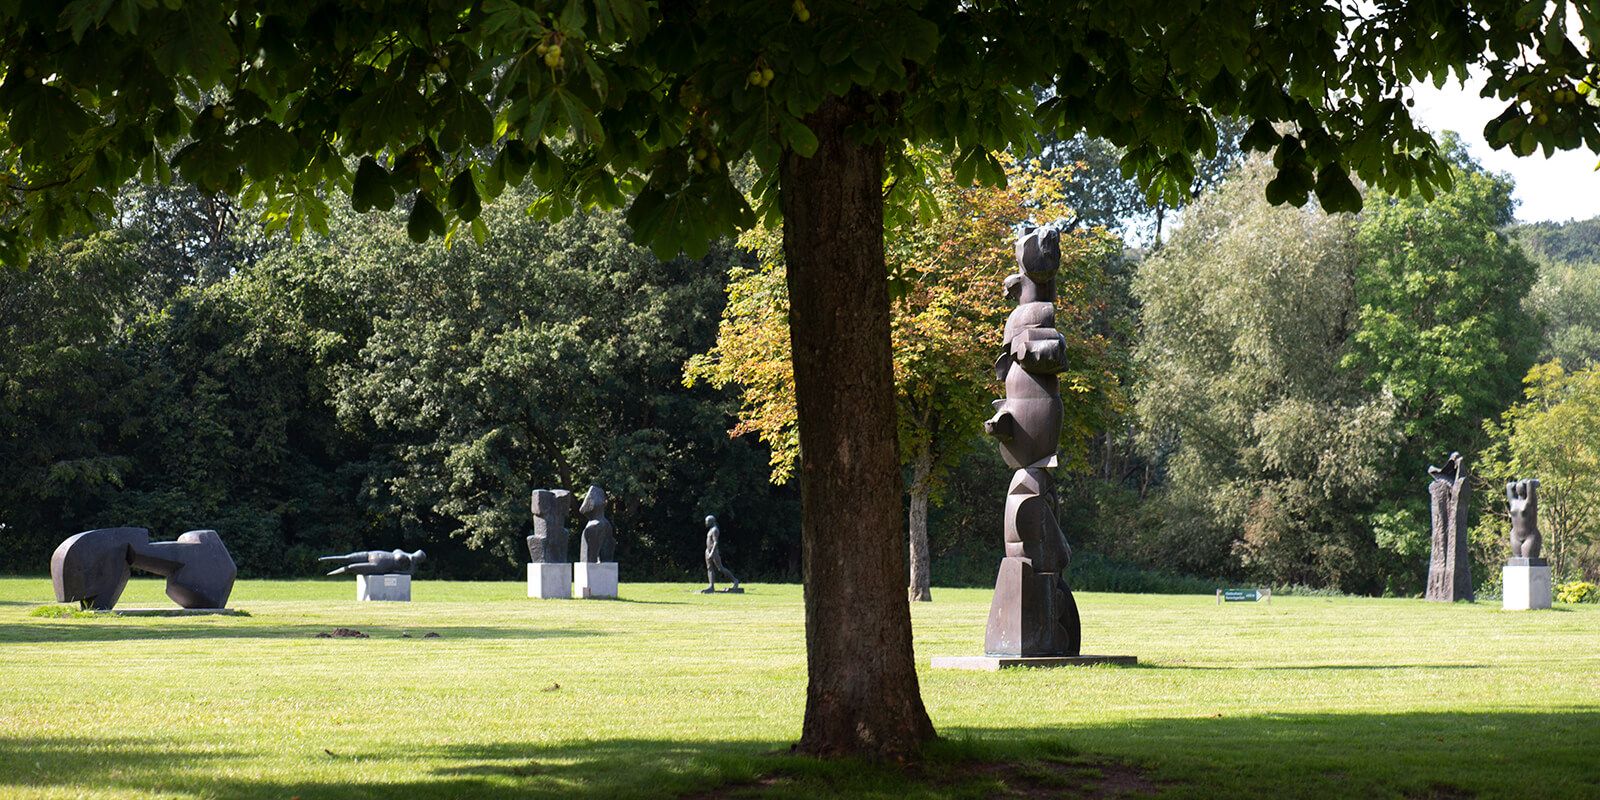 Skulpturenpark Schloss Gottorf